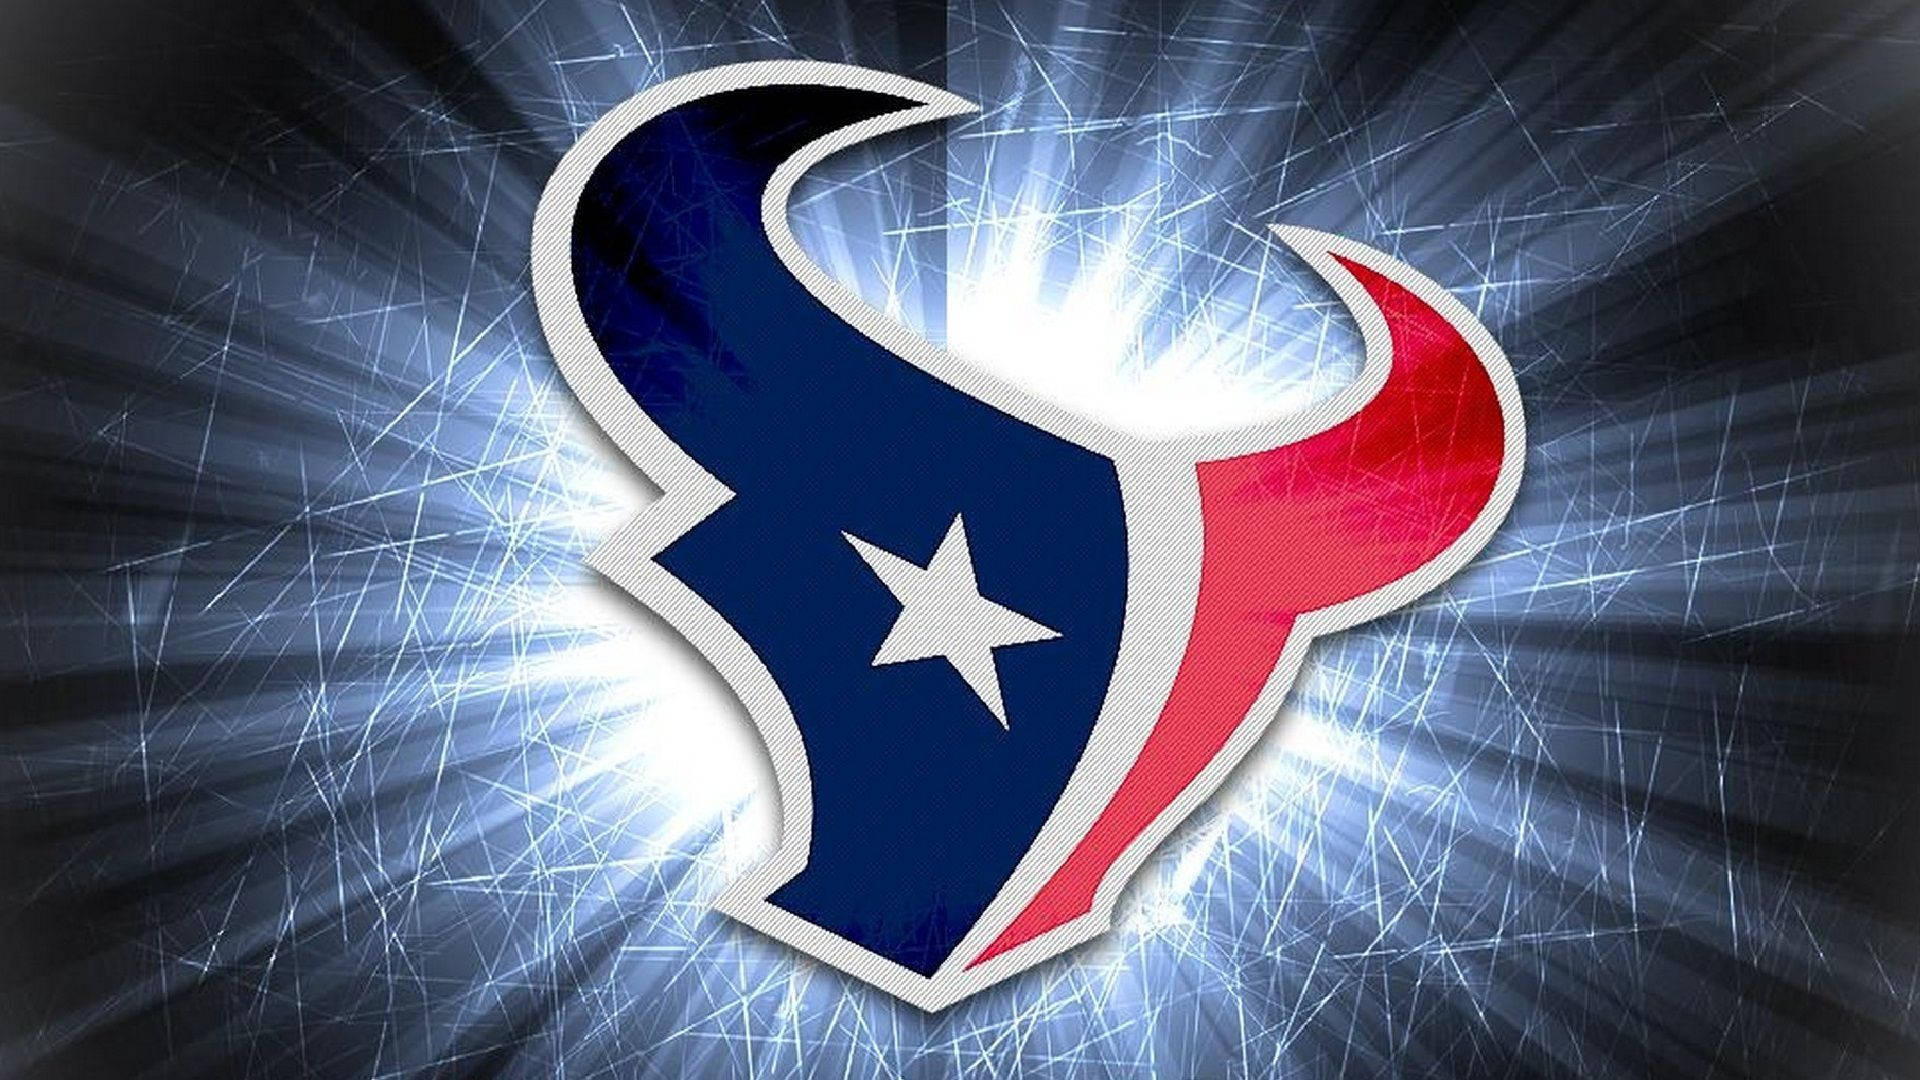 Houston Texans - America's favorite NFL team Wallpaper